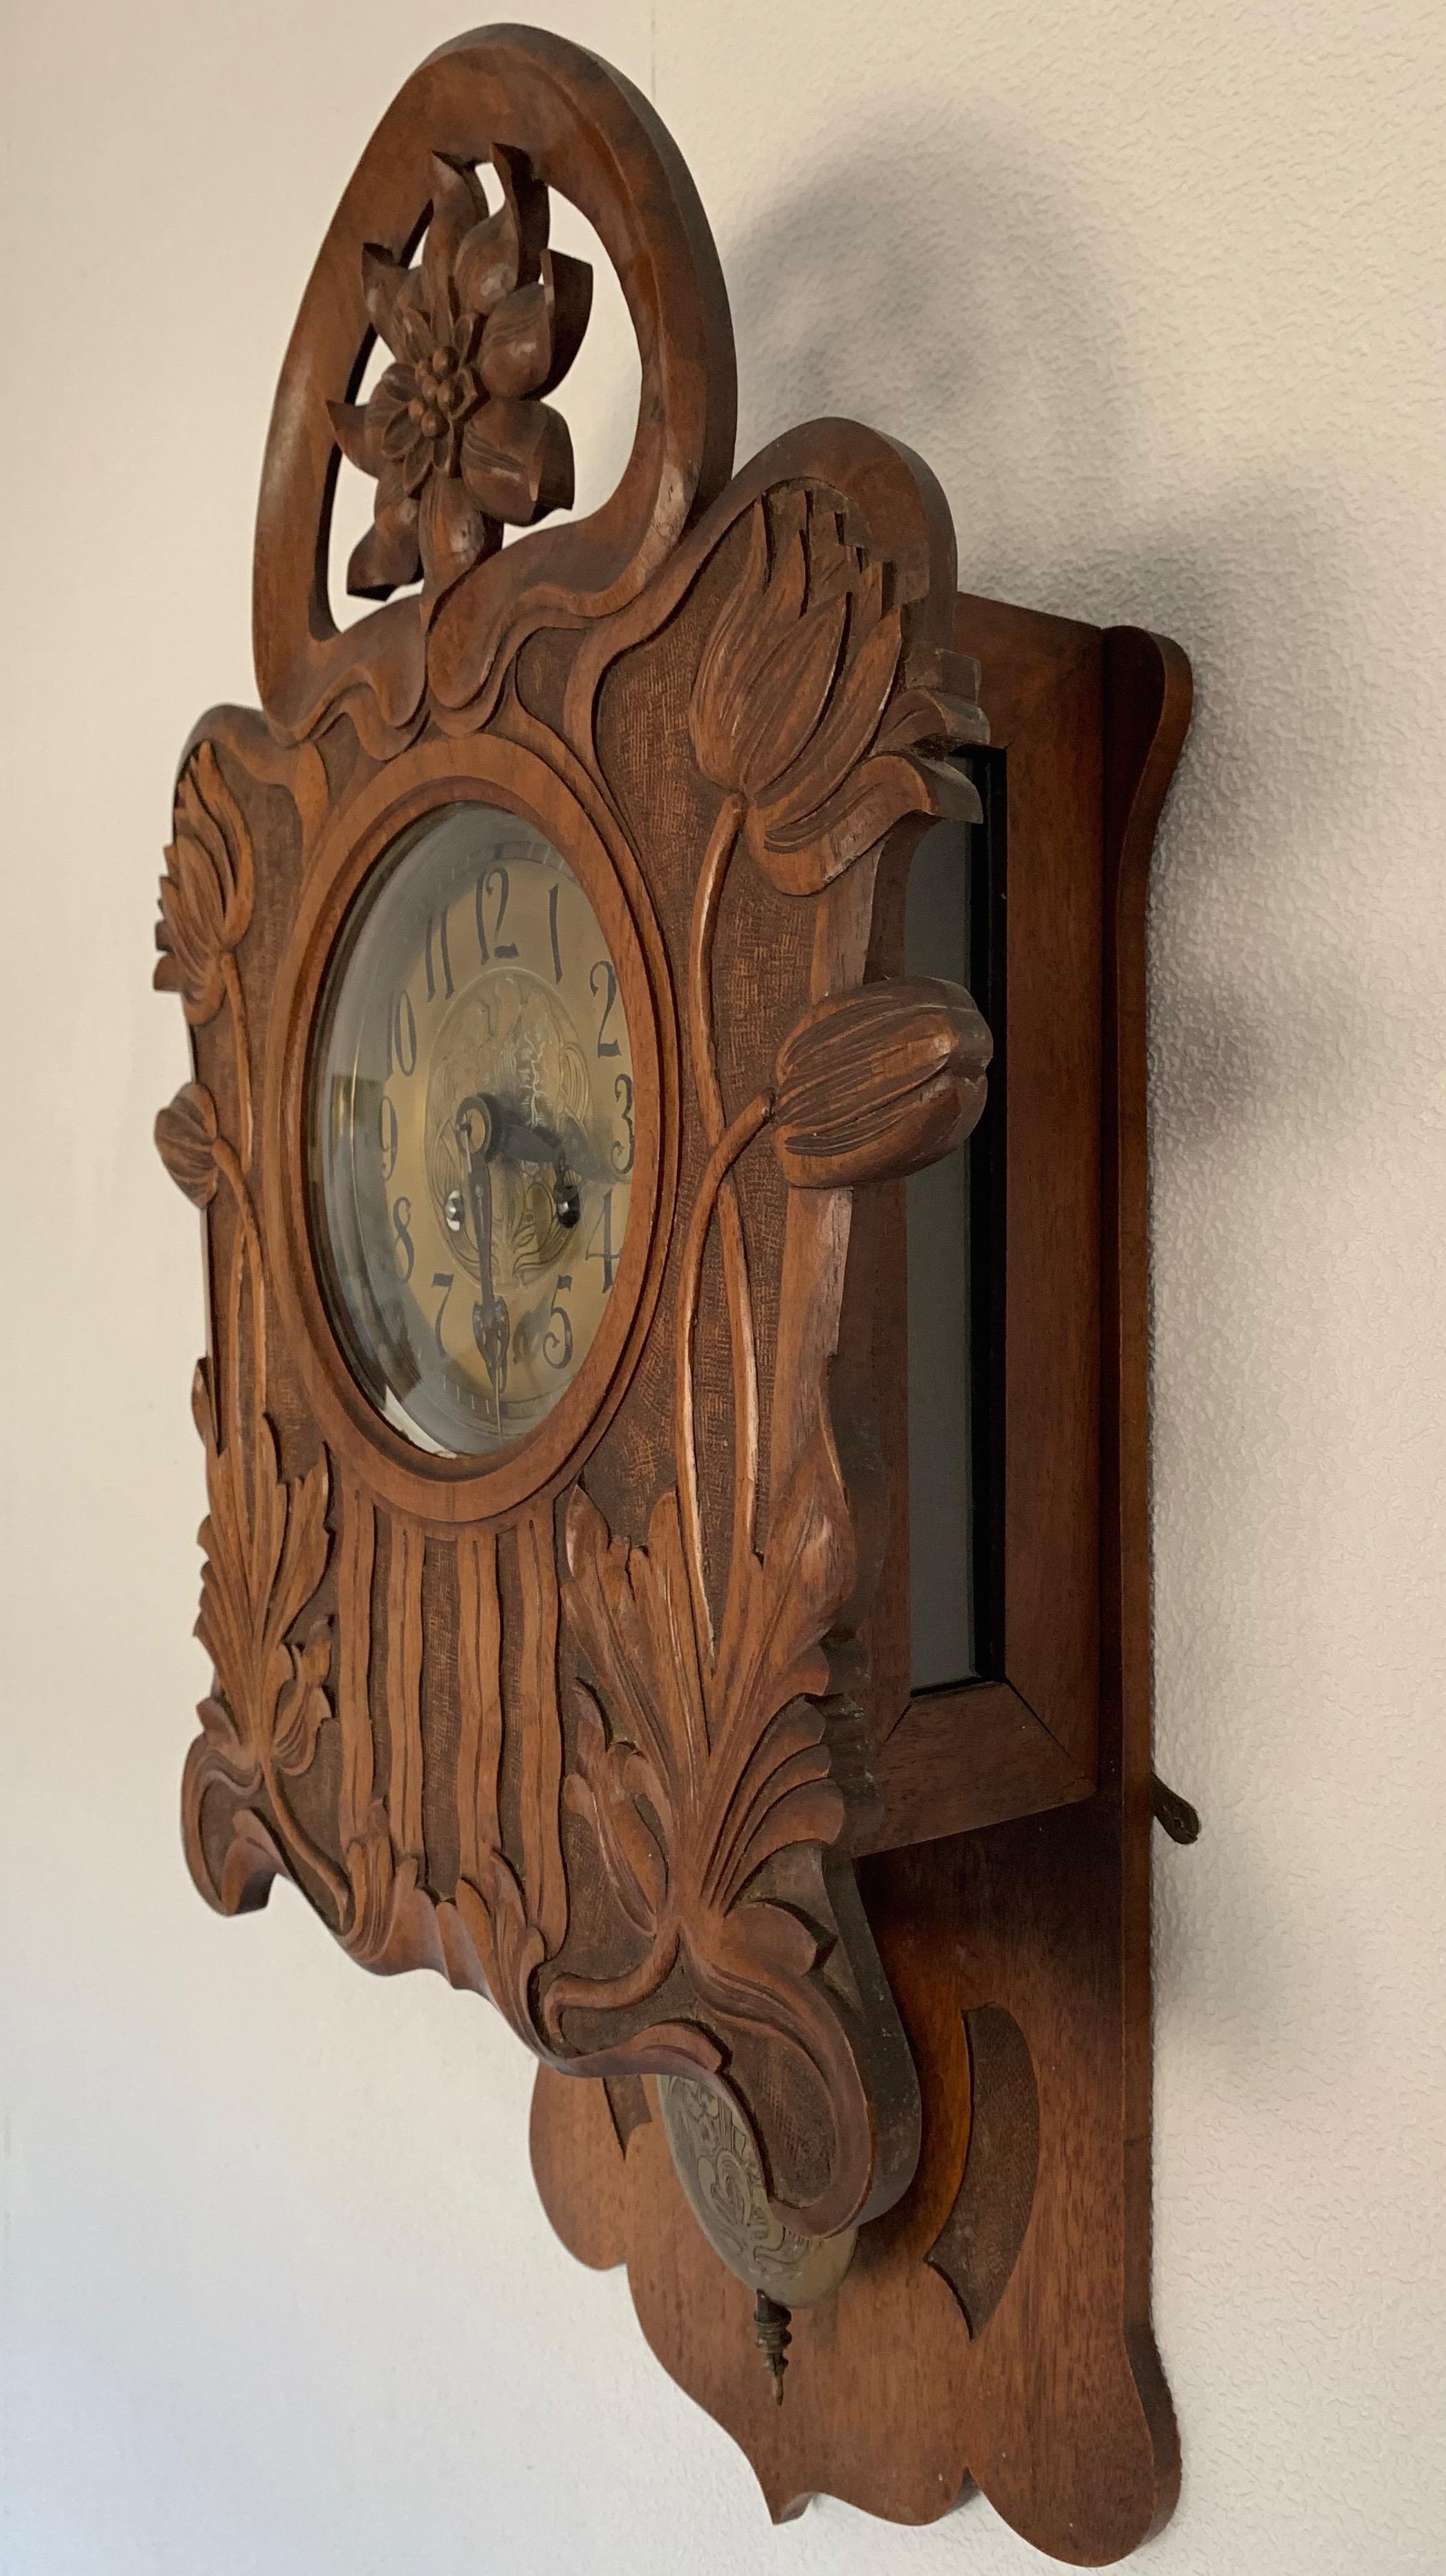 German Antique Hand Carved Solid Nutwood Jugendstil Wall Clock with Rare Flower Design